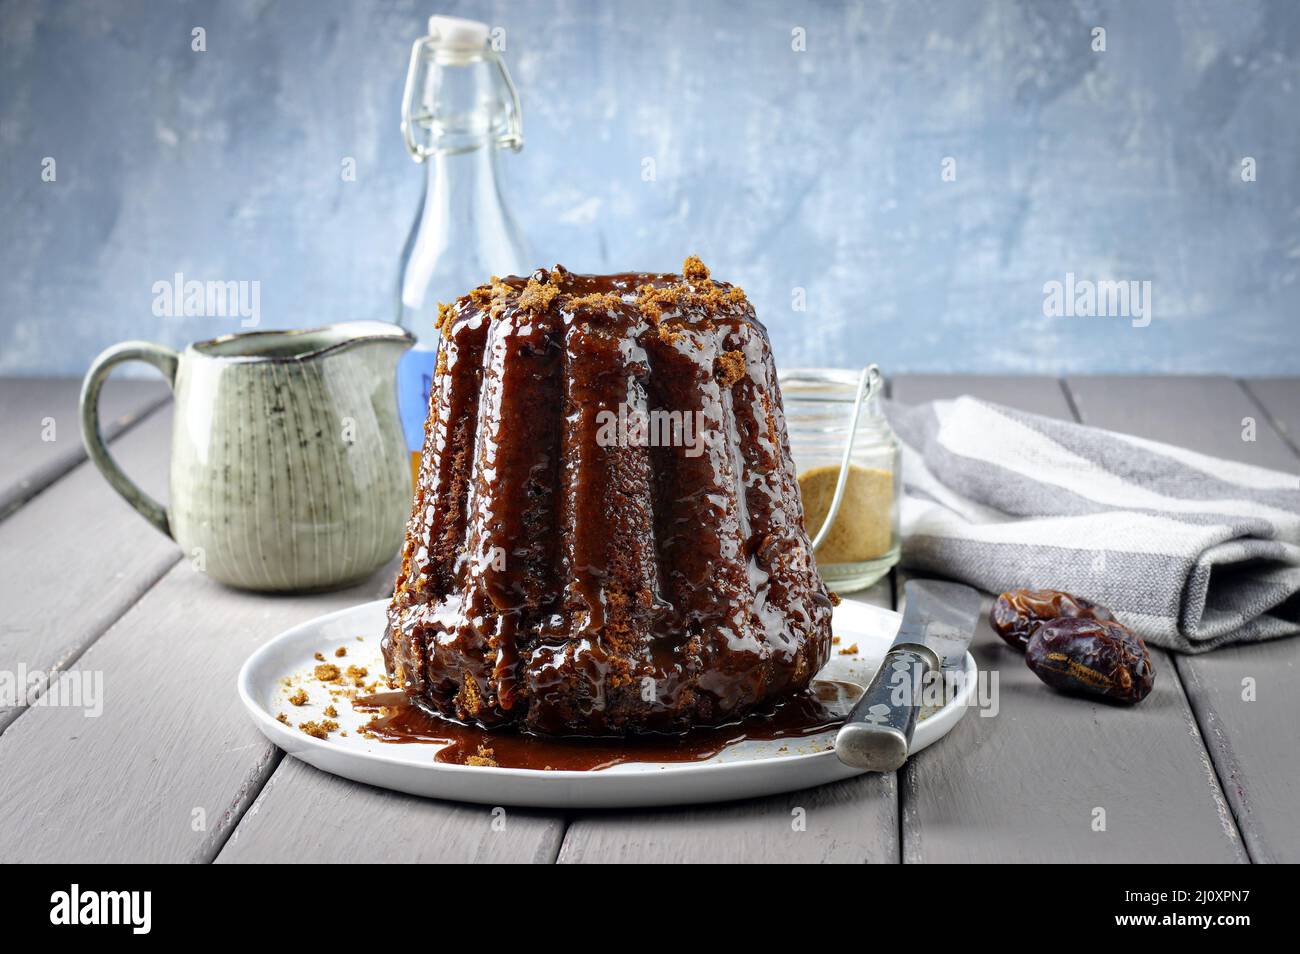 Pudding anglais traditionnel avec glaçage au caramel servi en gros plan sur une assiette design Banque D'Images